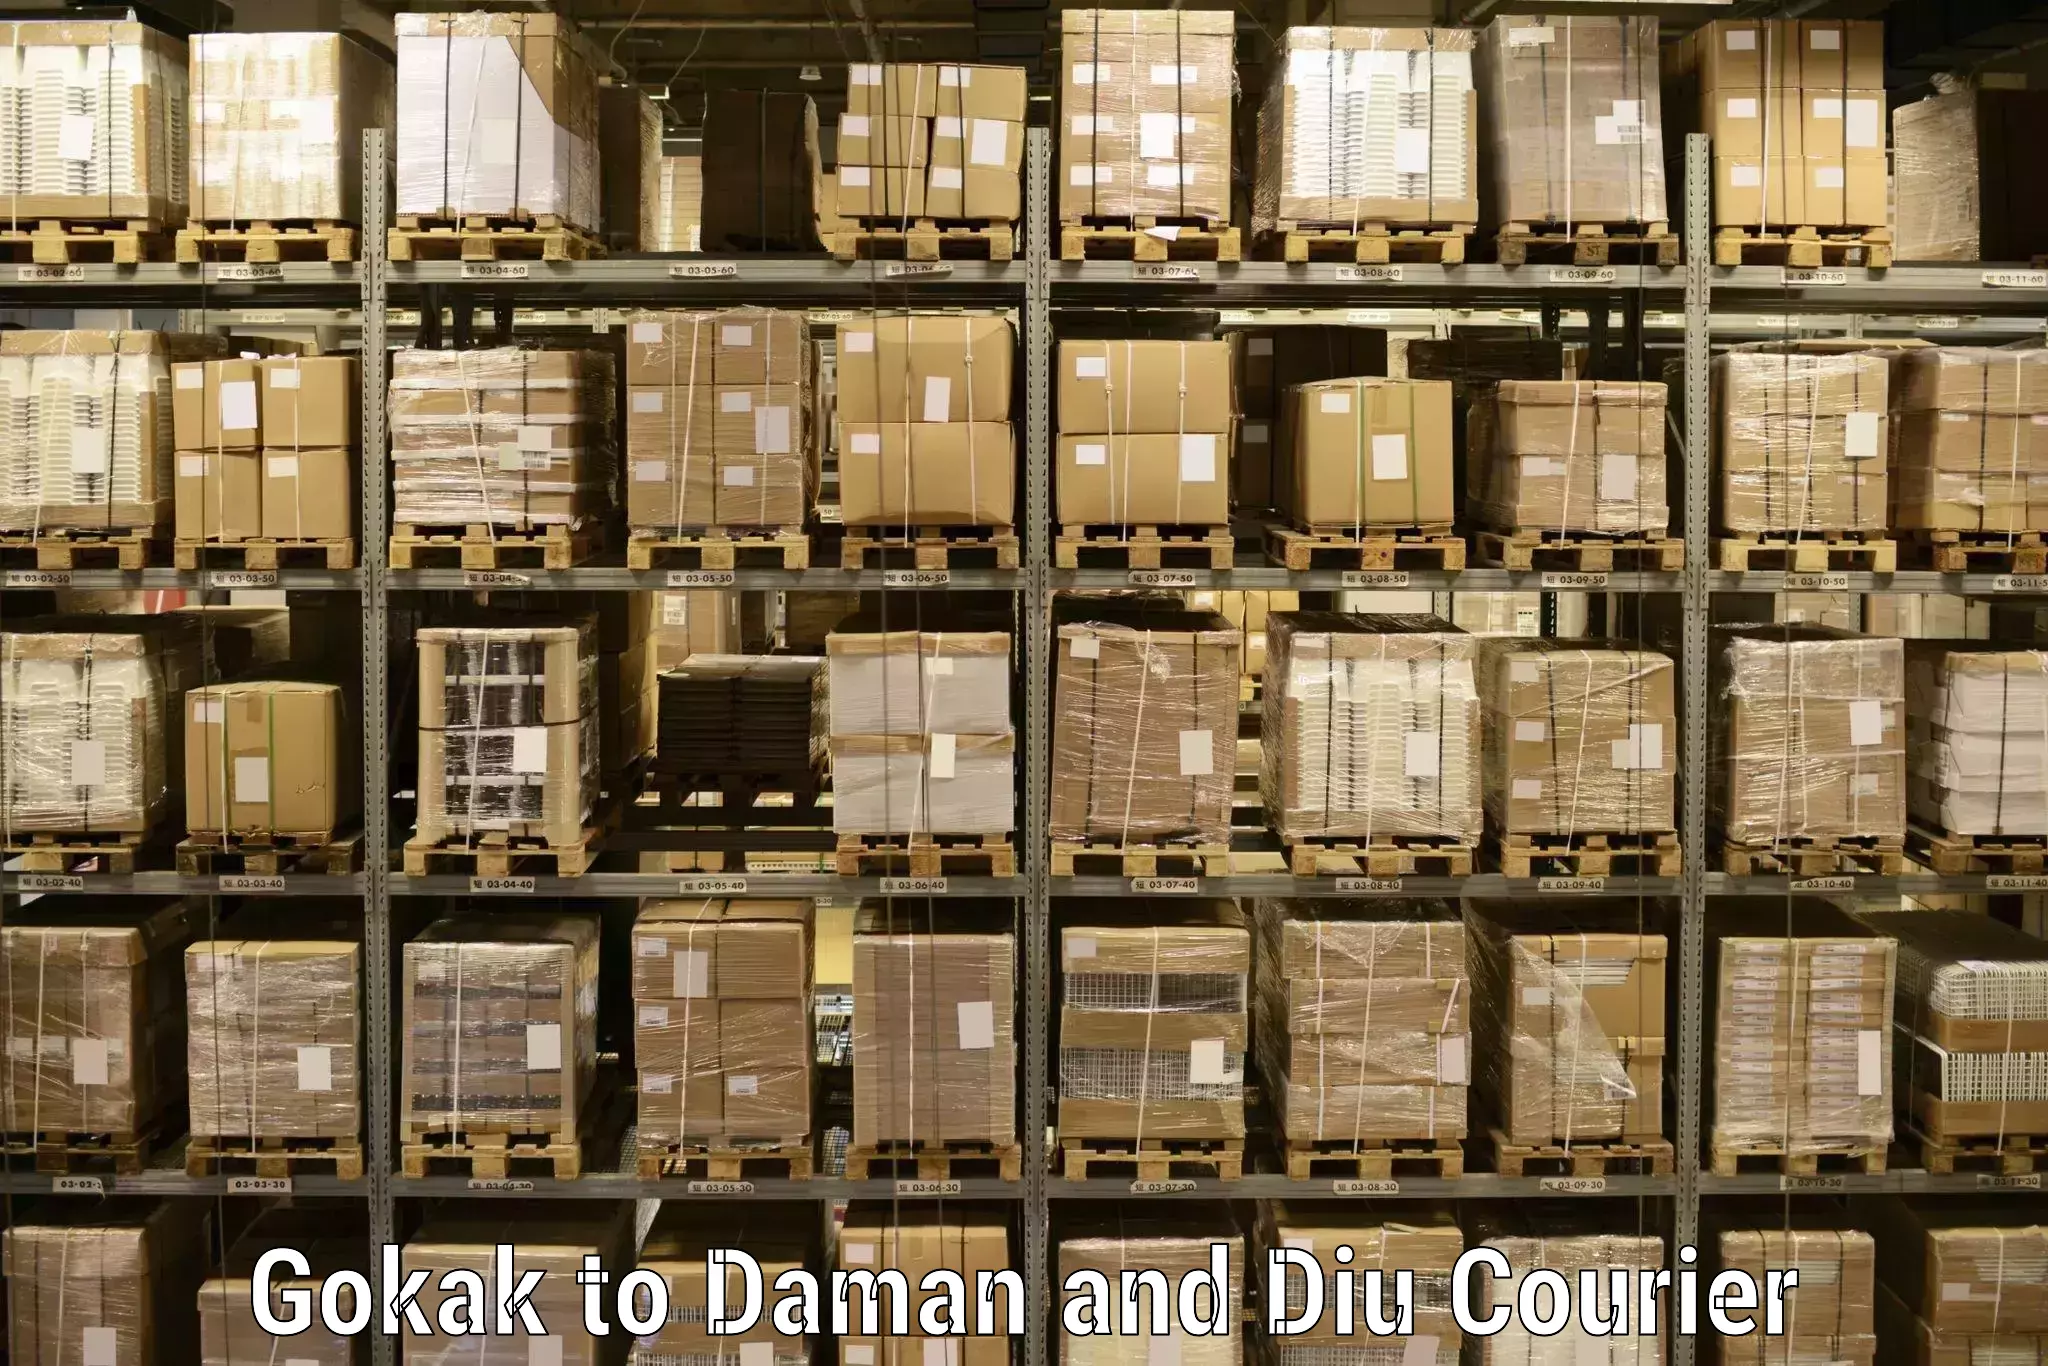 Express logistics service Gokak to Daman and Diu